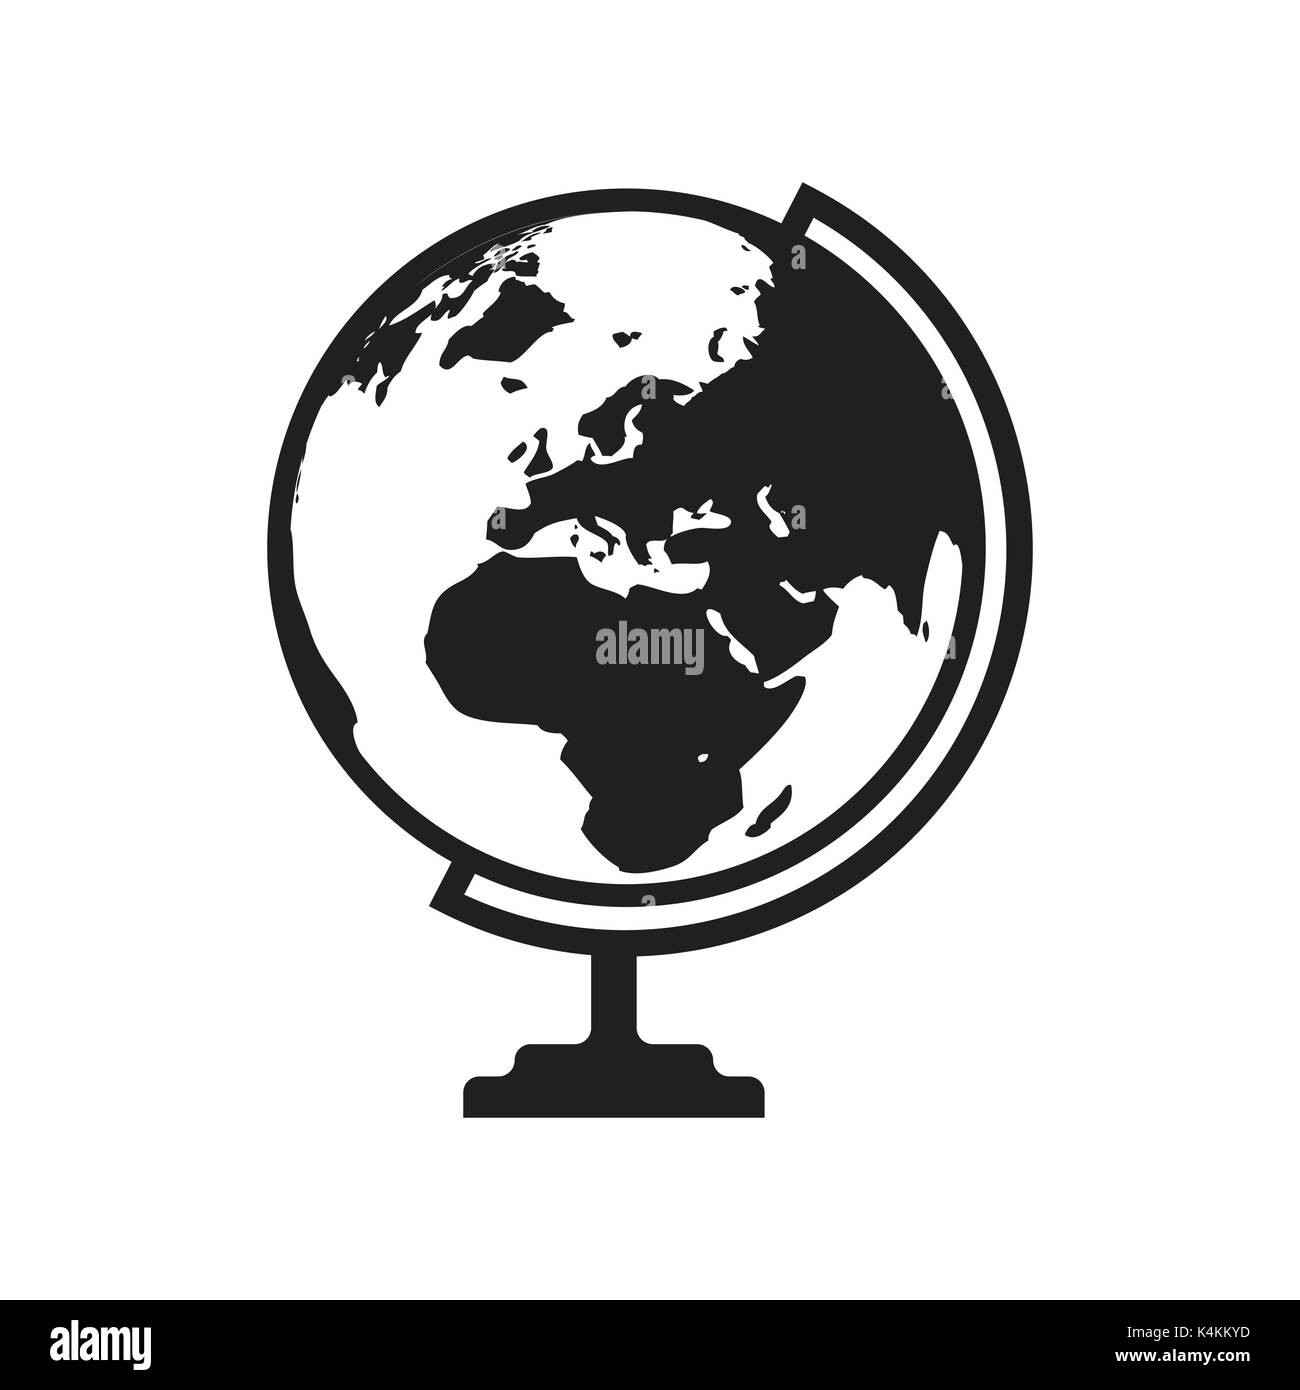 Globus Symbol Vektor mit Asien, Afrika und Europa Karte. Flache Symbol auf dem weißen Hintergrund. Vector Illustration. Stock Vektor